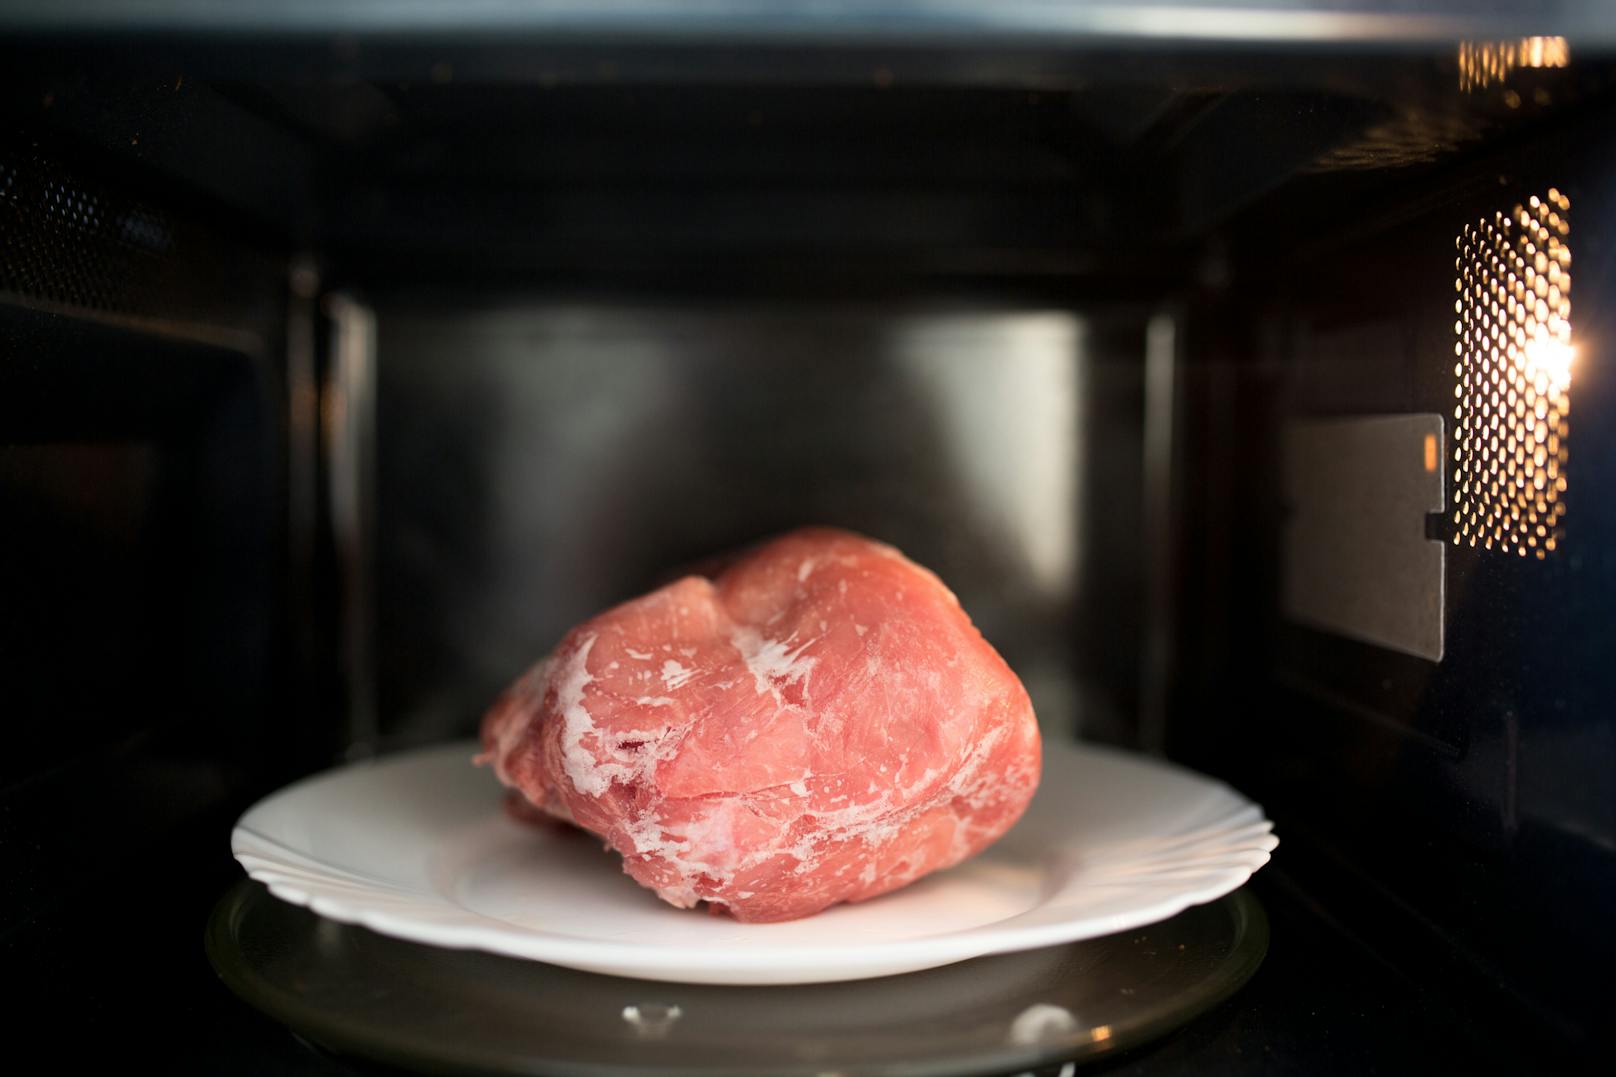 Säfte aus rohem Fleisch enthalten häufig schädliche Bakterien und sollten umgehend aus der Mikrowelle entfernt werden. Nur so verhindert man eine Kontamination mit anderen Lebensmitteln.